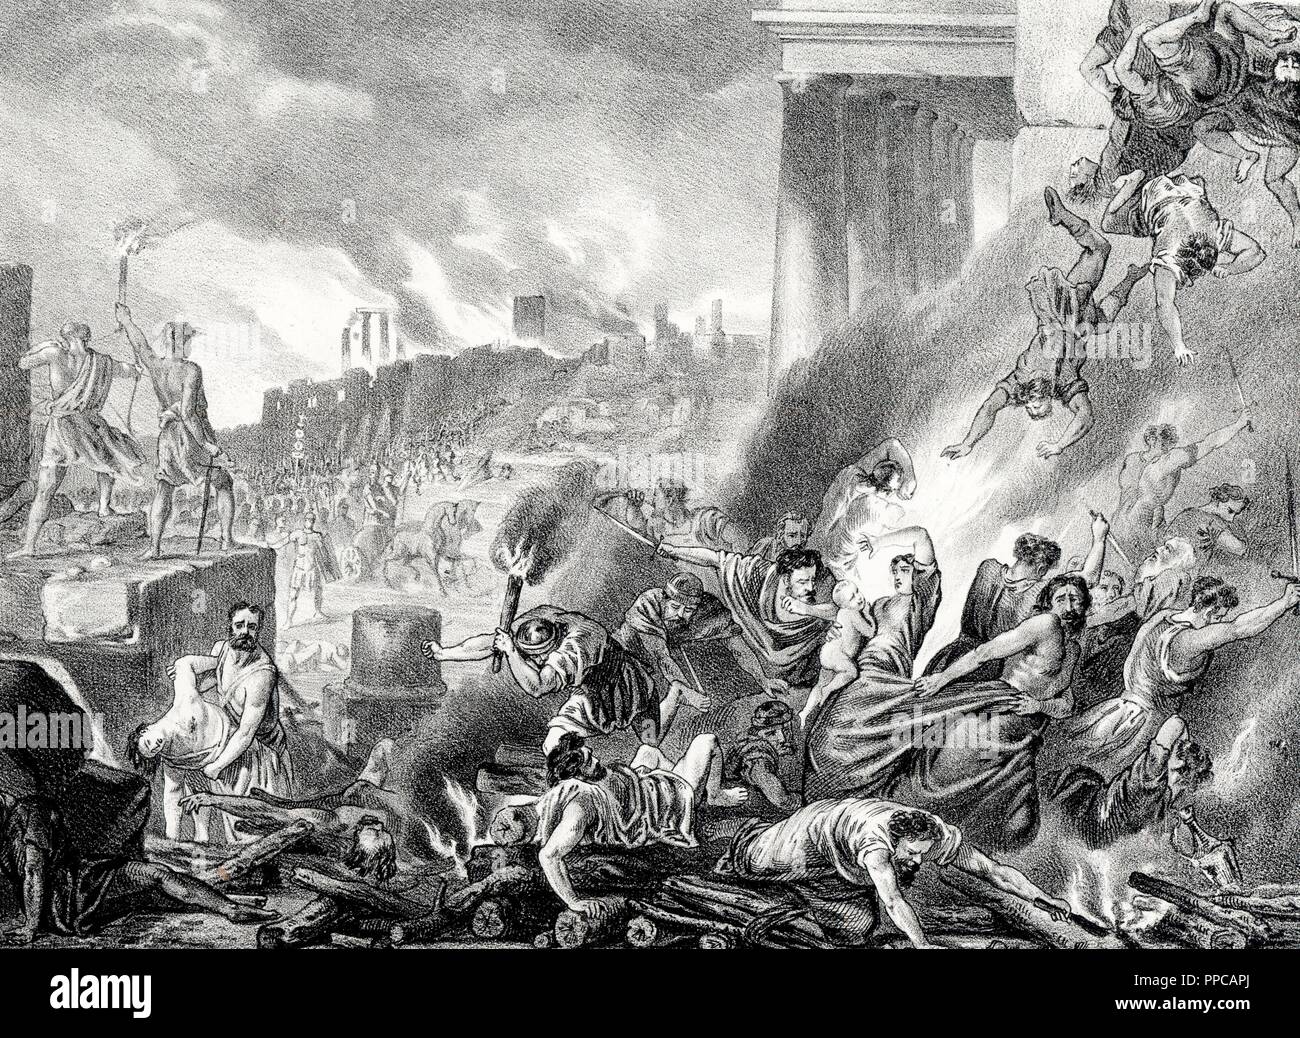 Historia. Fin del asedio a la ciudad de Numancia con la derrota de los numantinos en el año 132 a. C. Grabado de 1871. Stock Photo